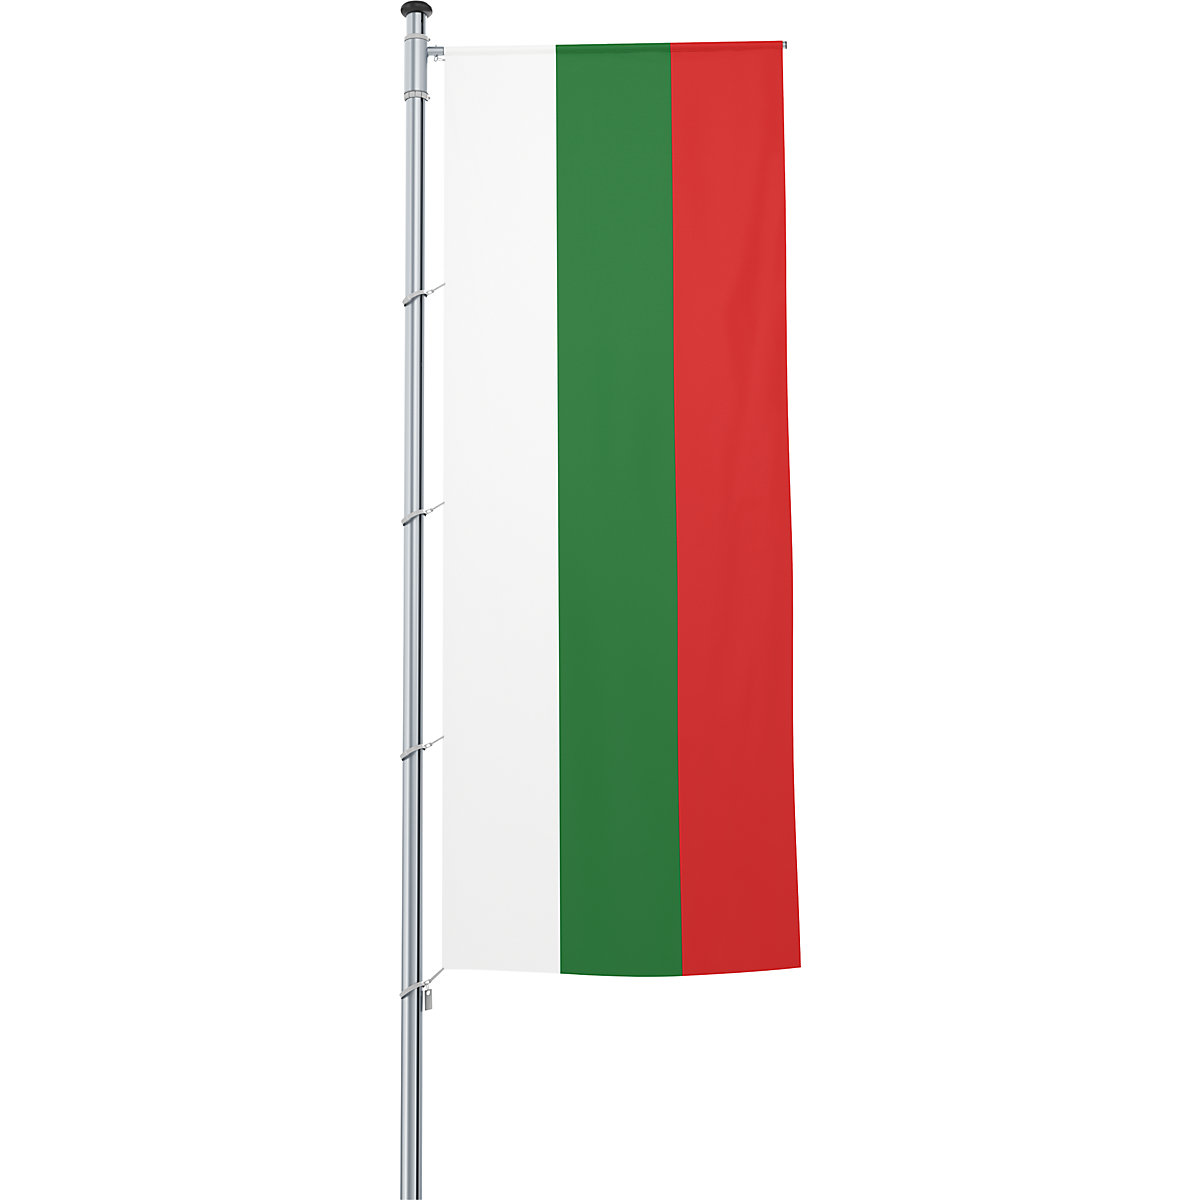 Mannus – Bandera con pluma/bandera del país (Imagen del producto 56)